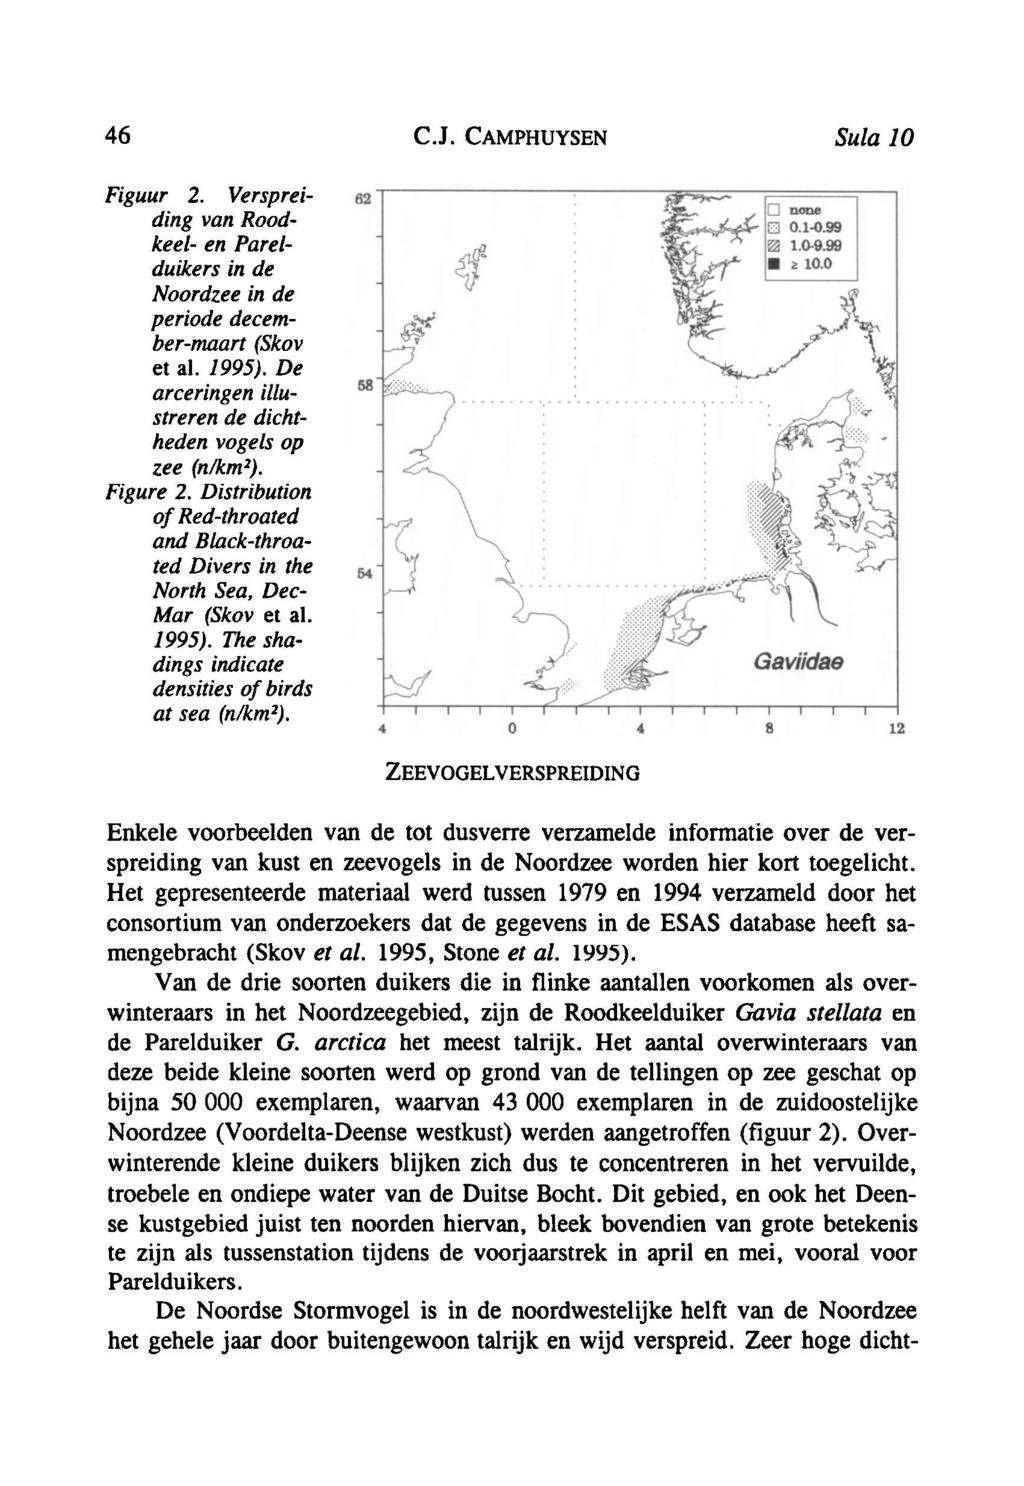 46 C.J. Camphuysen Sula 10 Figuur 2. Verspreiding van Roodkeel en Parelduikers in de Noordzee in de periode decembermaart (Skov et al. 1995).